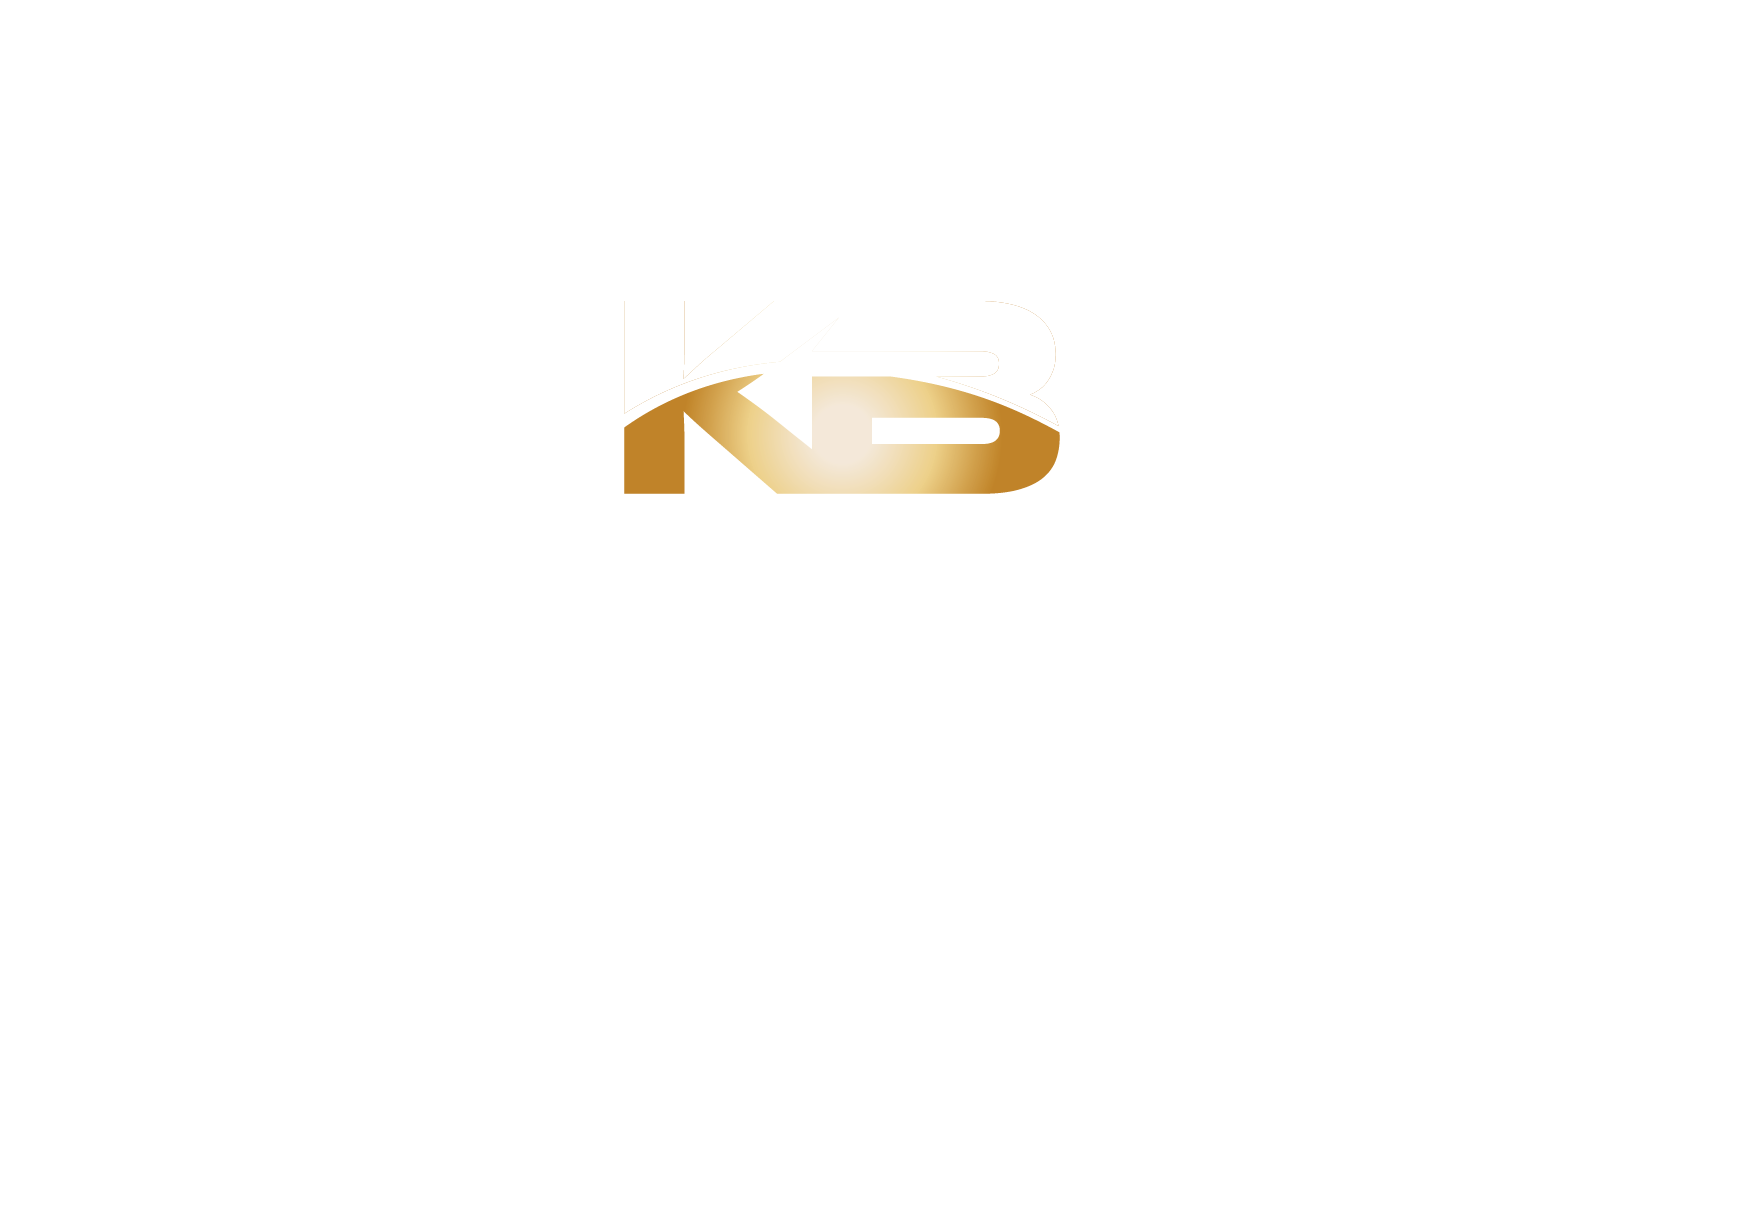 Kretschmer-Bau | Mit Liebe Zum Handwer | Ihr Handwerker für Niedersachen | Einbeck | Trockenbau | Renovierung | Fußbodenarbeiten | Bodenverlegearbeiten | Vertäfelungen | Hausmeisterservice